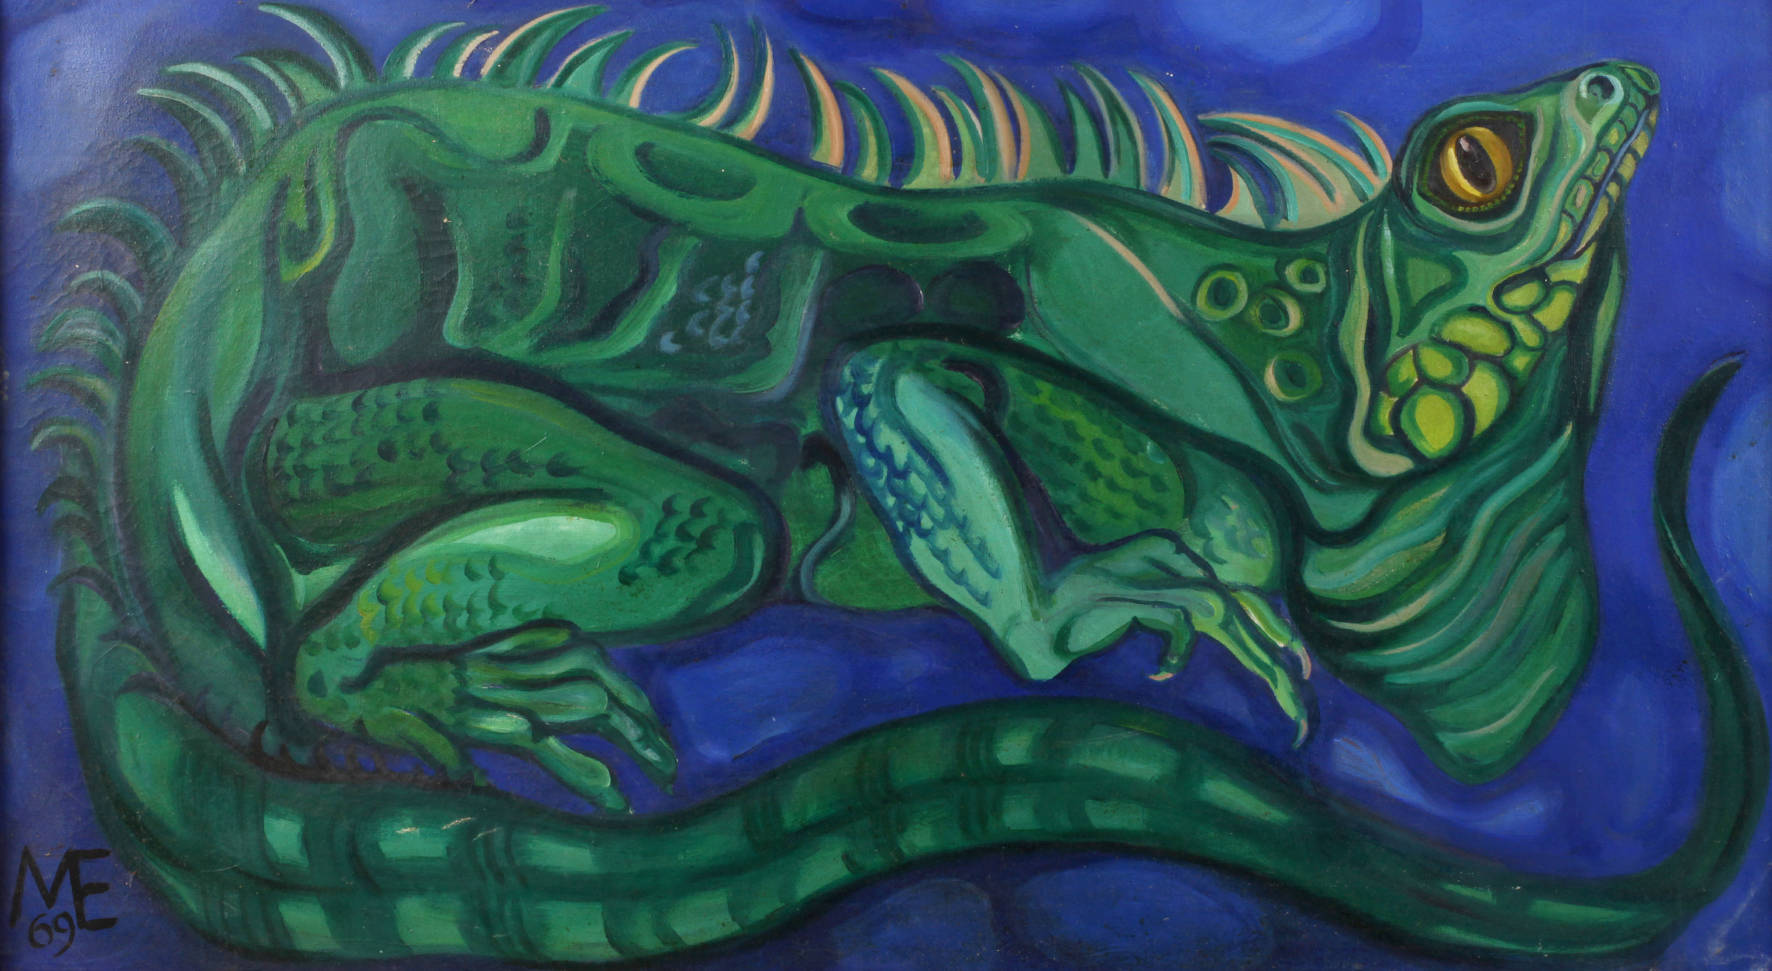 Grüner Leguan vor blauem Grund